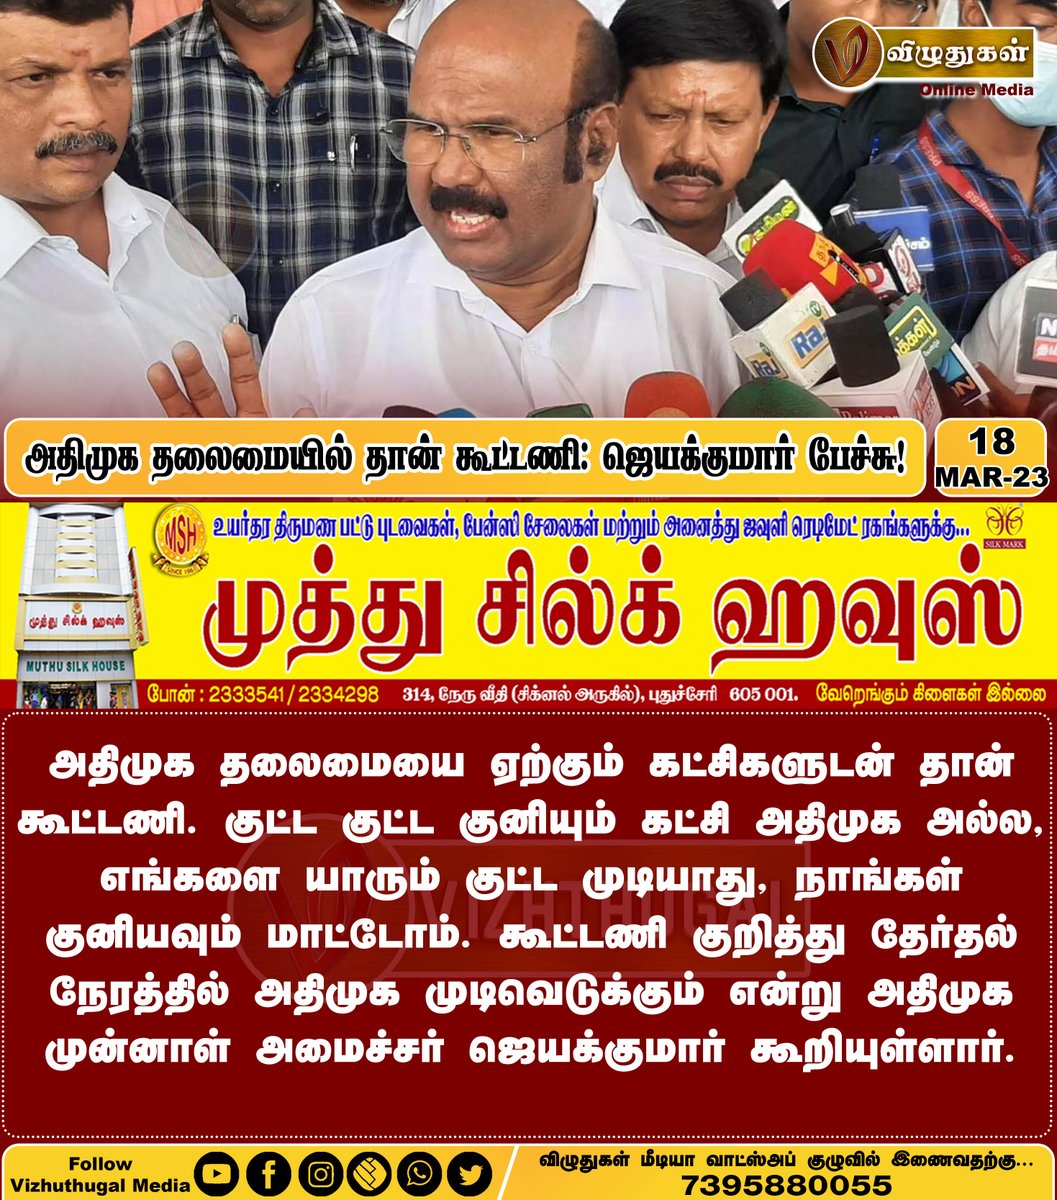 அதிமுக தலைமையில் தான் கூட்டணி: ஜெயக்குமார் பேச்சு!
#ministerjayakumar #admkalliance #ADMK #election #TamilnaduNews